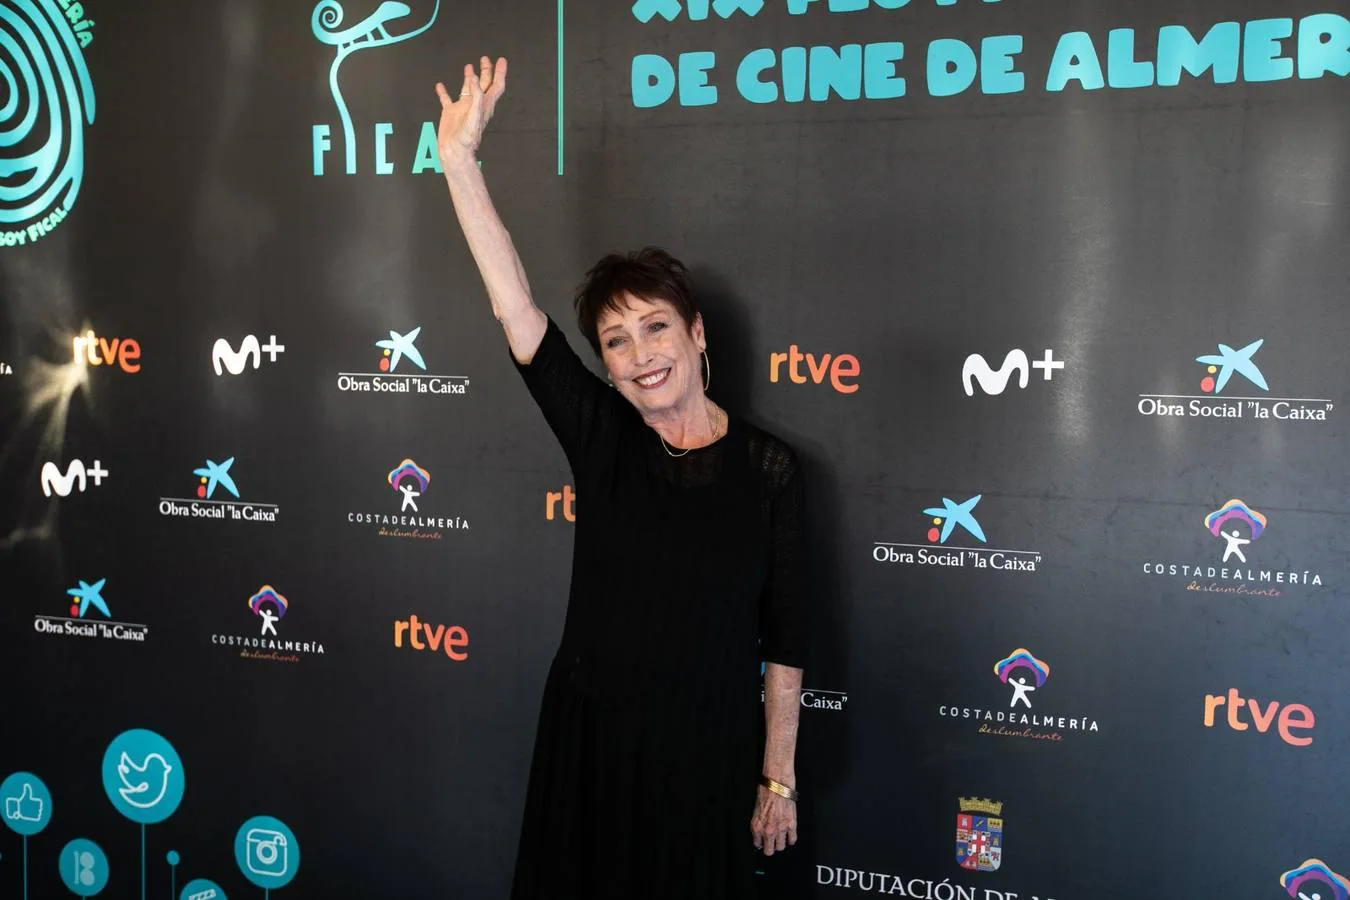 Grandes estrellas del cine español iluminan Almería en su festival